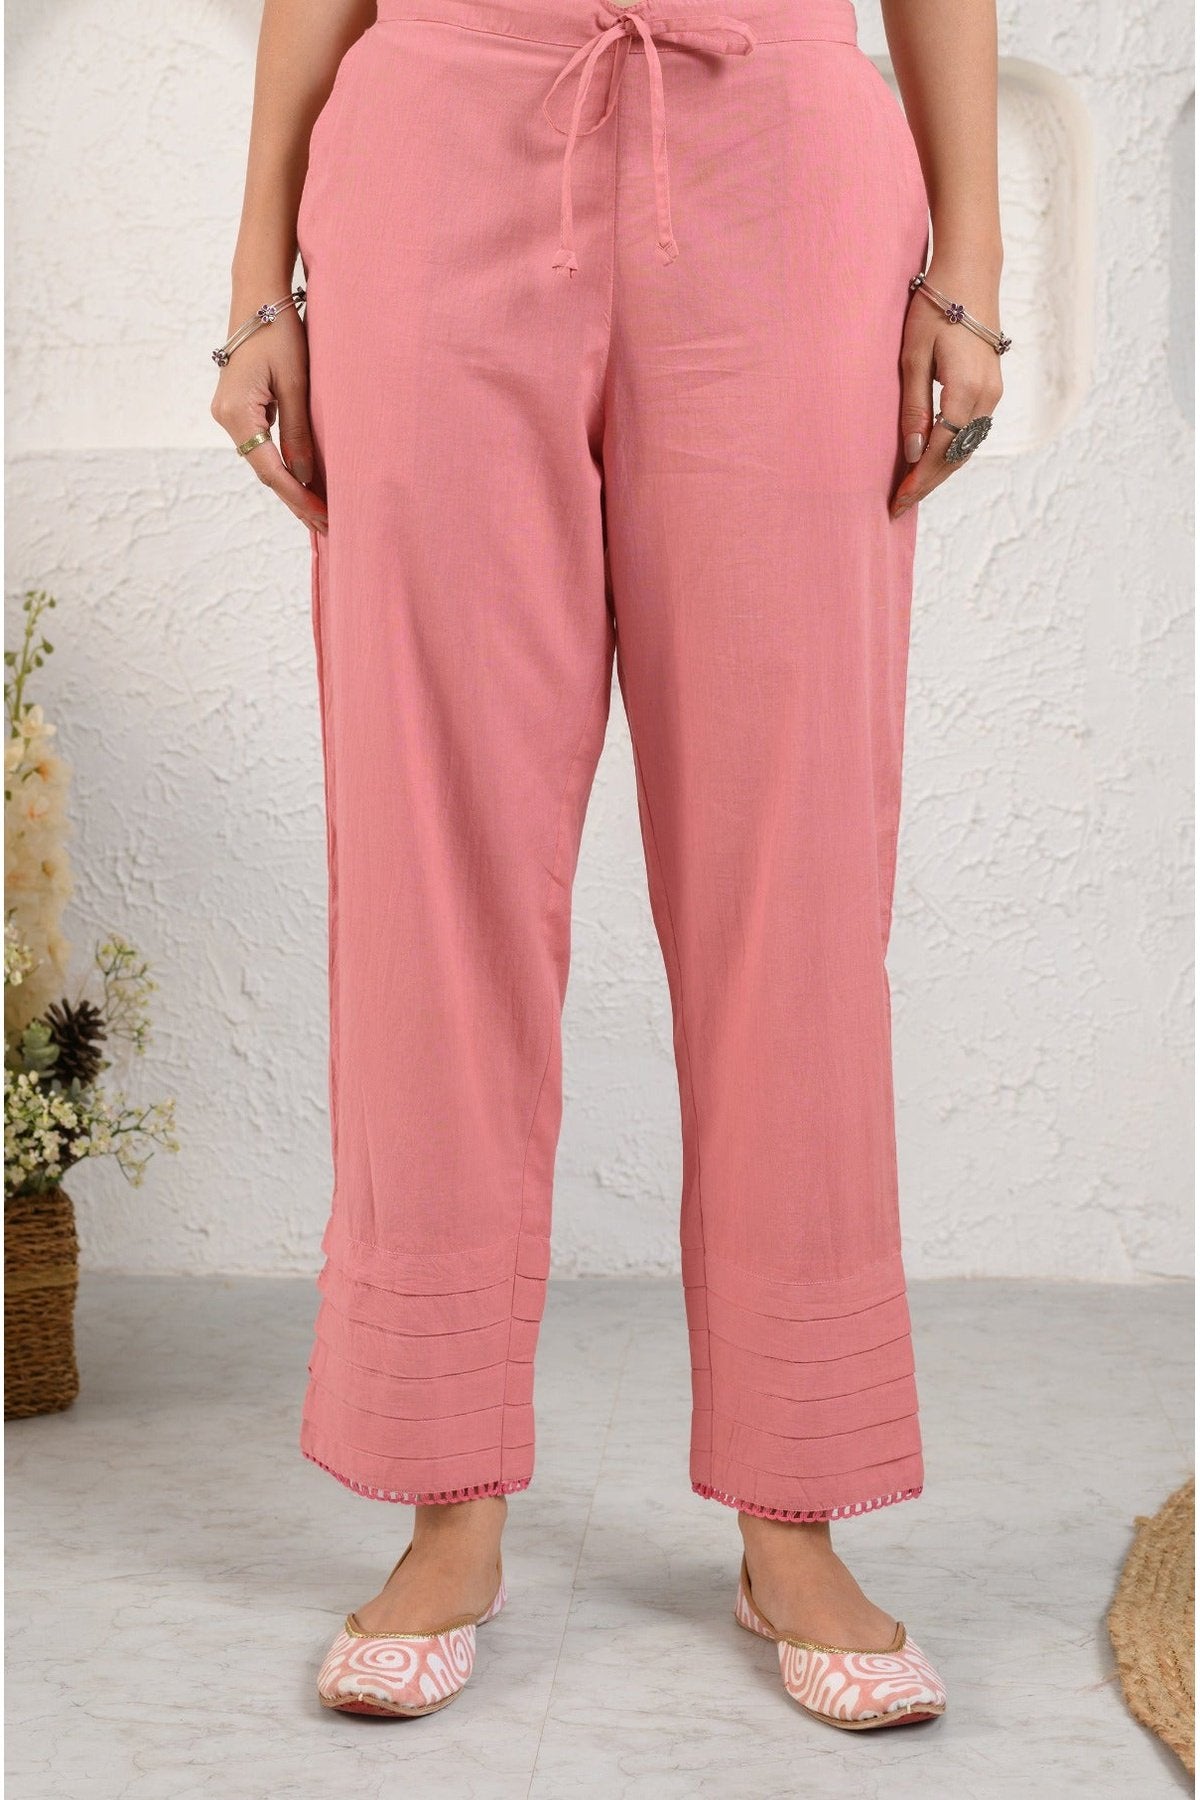 Pink Summer Suit Set